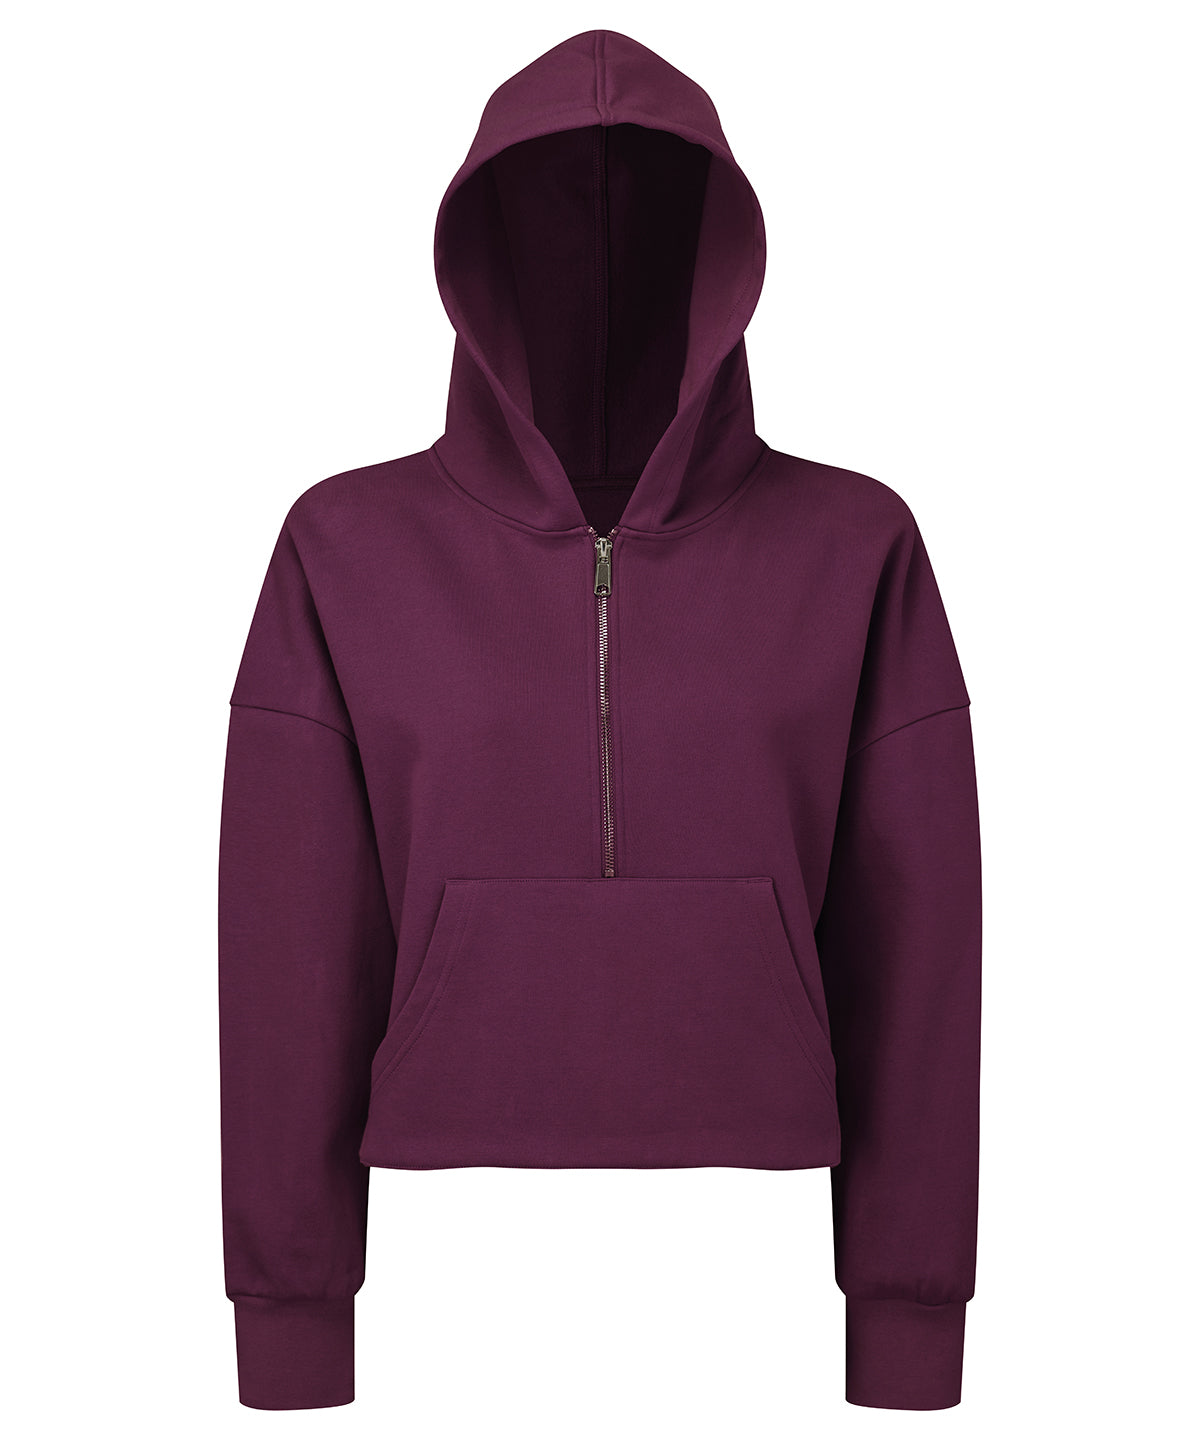 Women's TriDri® 1/2 zip hoodie